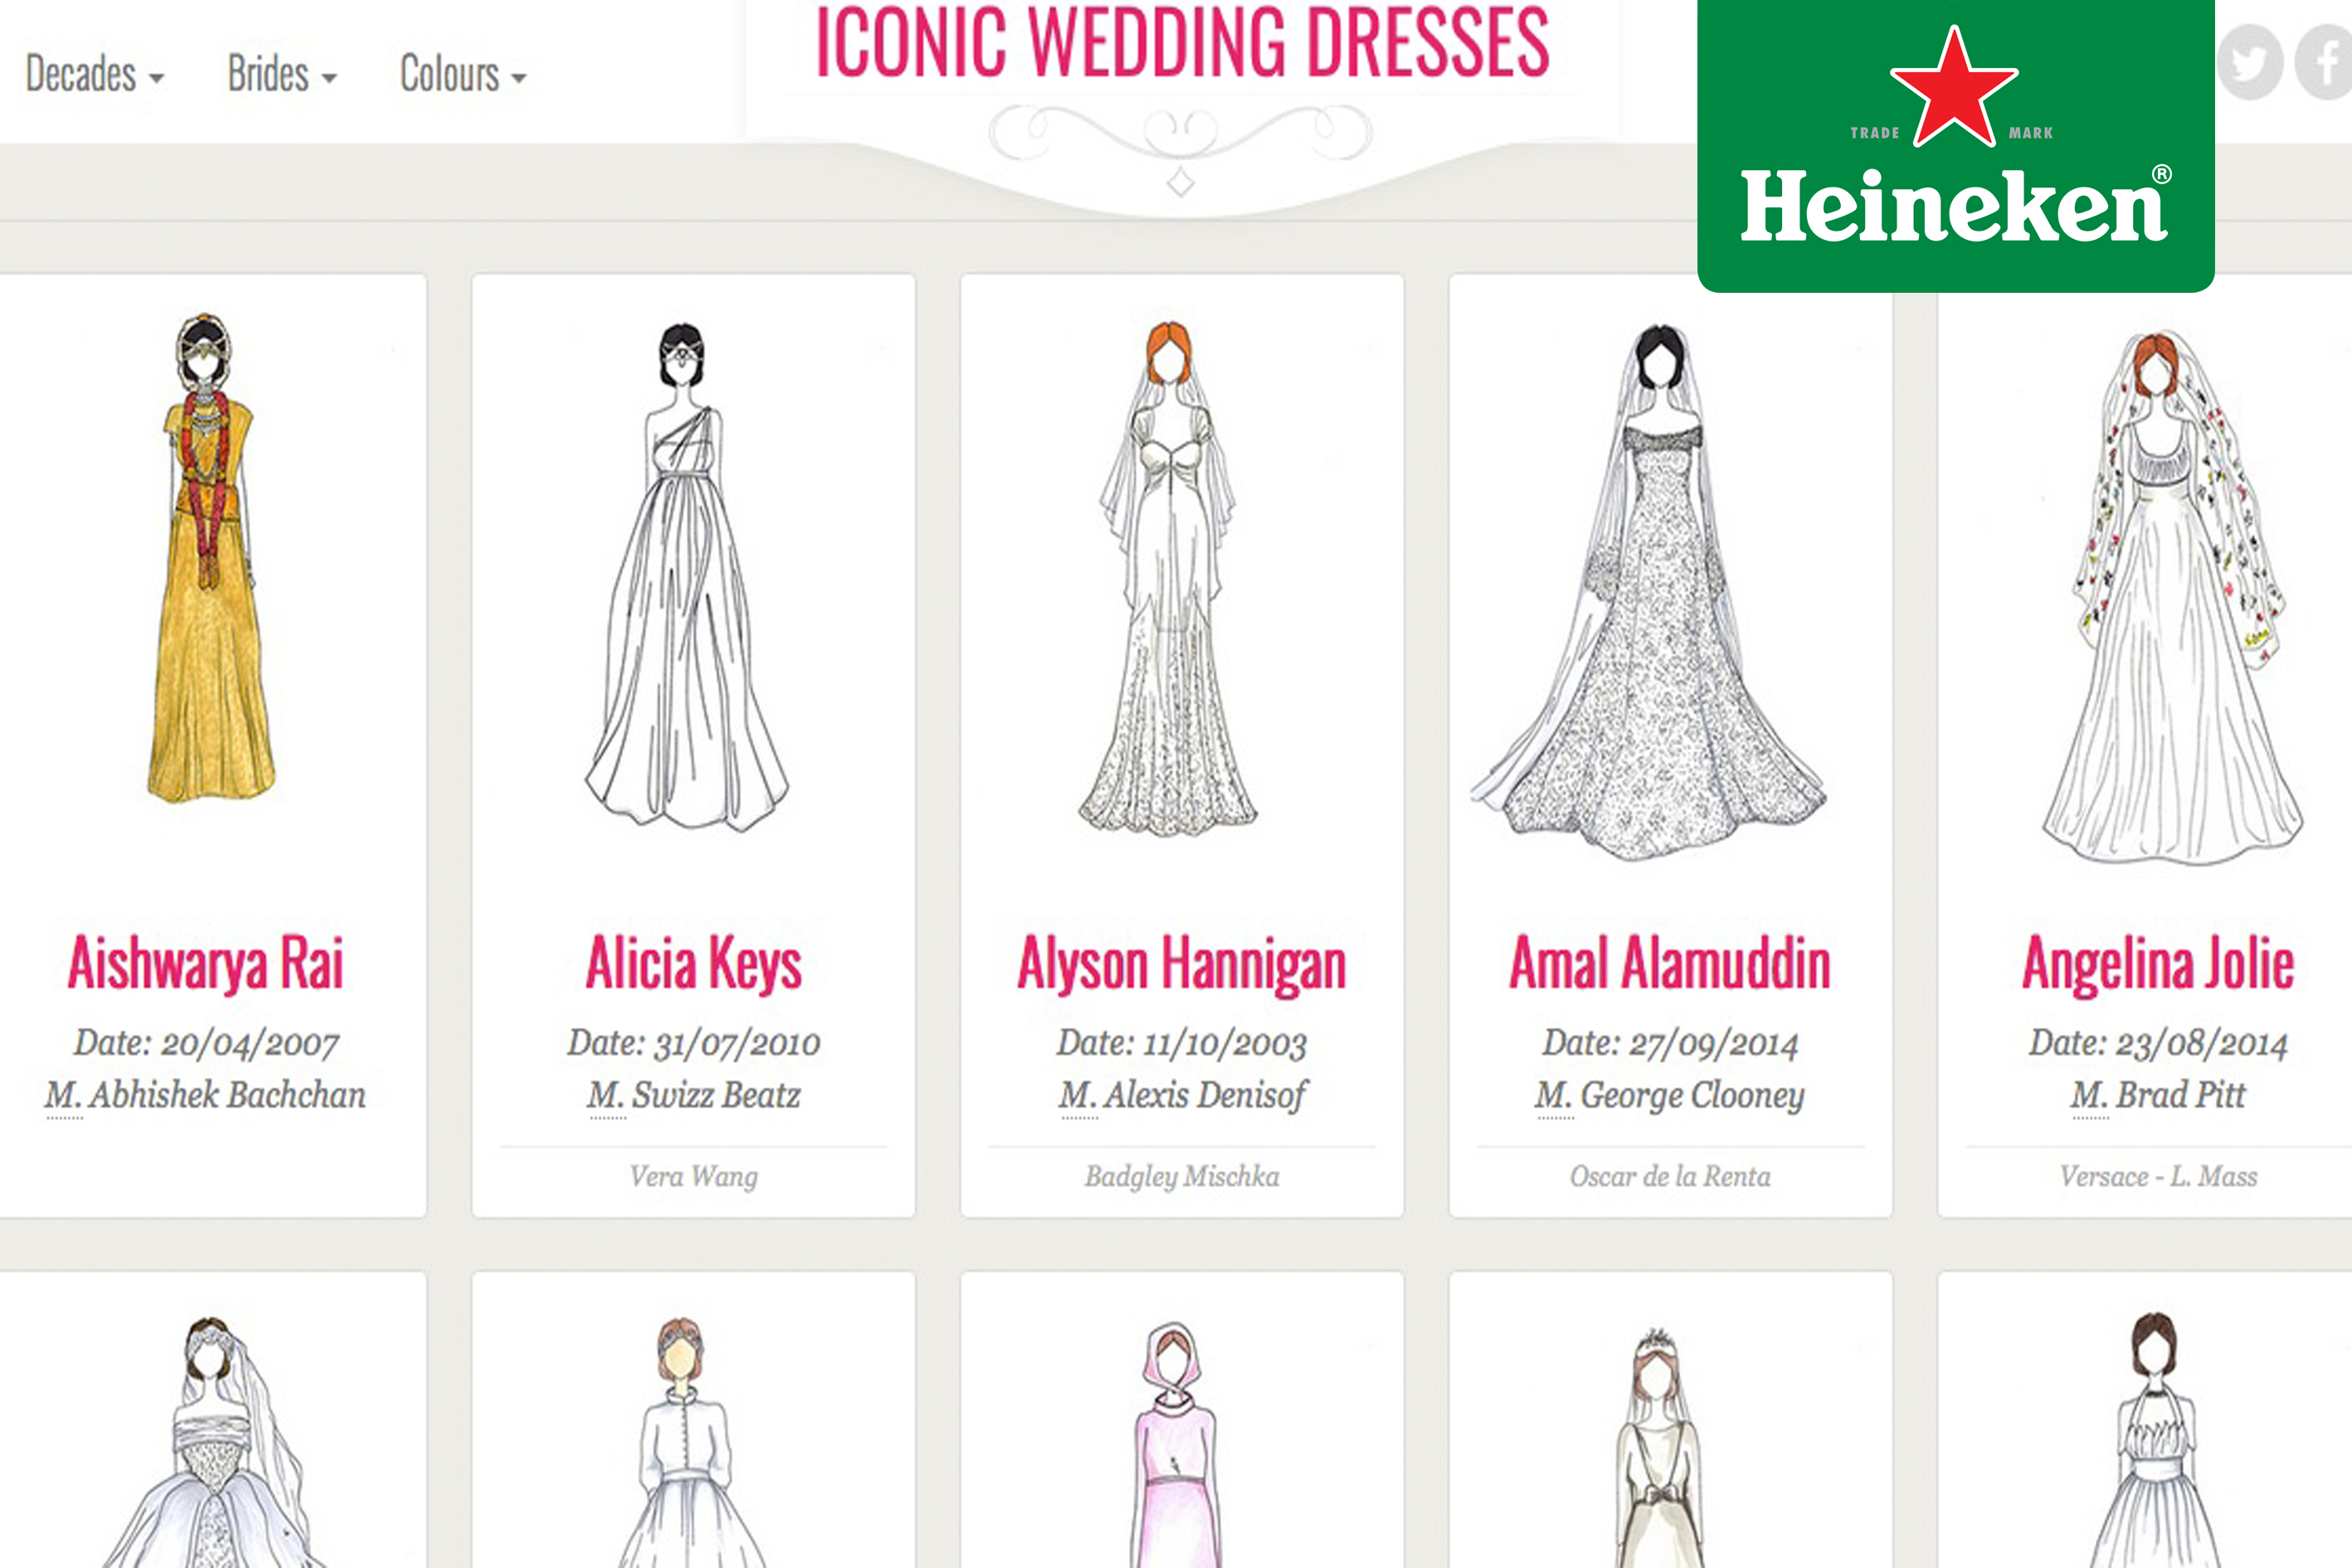 Vestidos de novias famosos en ilustraciones #HeinekenLife